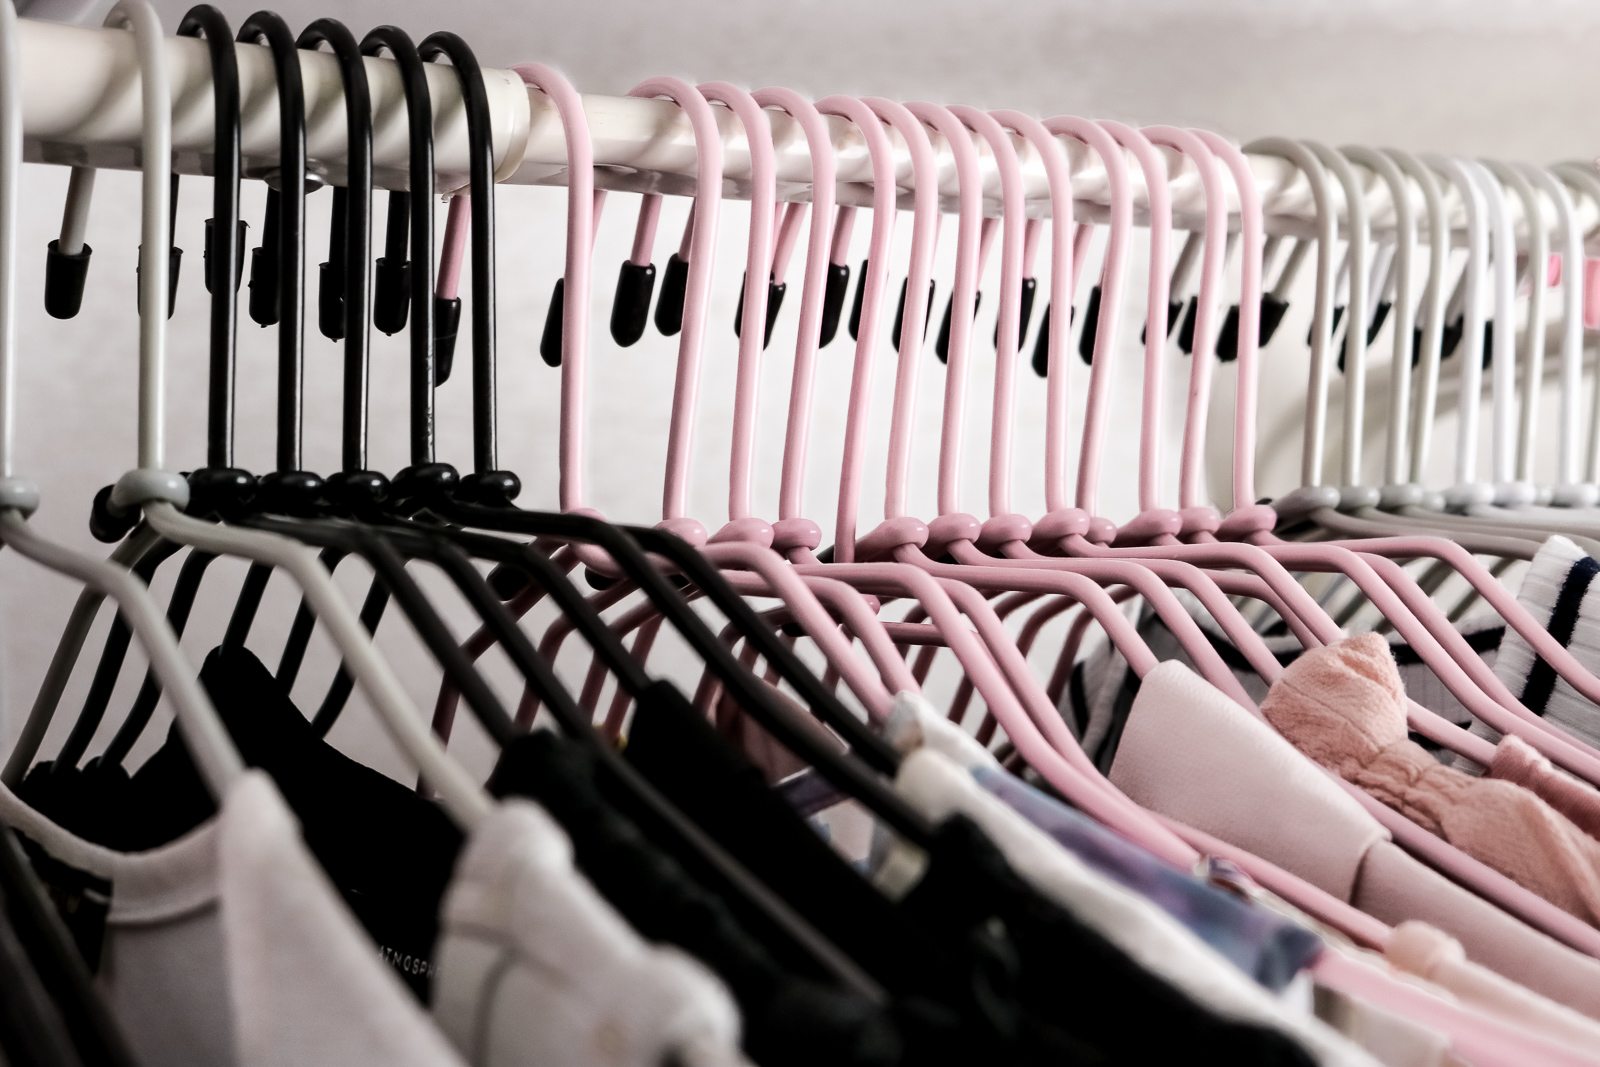 8 Tipps für mehr Ordnung im Kleiderschrank - Kleiderschrank aufräumen - Tipps und Tricks - Kleiderschrank Hacks - Kleiderschrank sortieren - mehr Platz im Kleiderschrank - der perfekte Kleiderschrank - Alltagstipps - Life Hacks - Fashionladyloves by Tamara Wagner - Lifestyle Blog